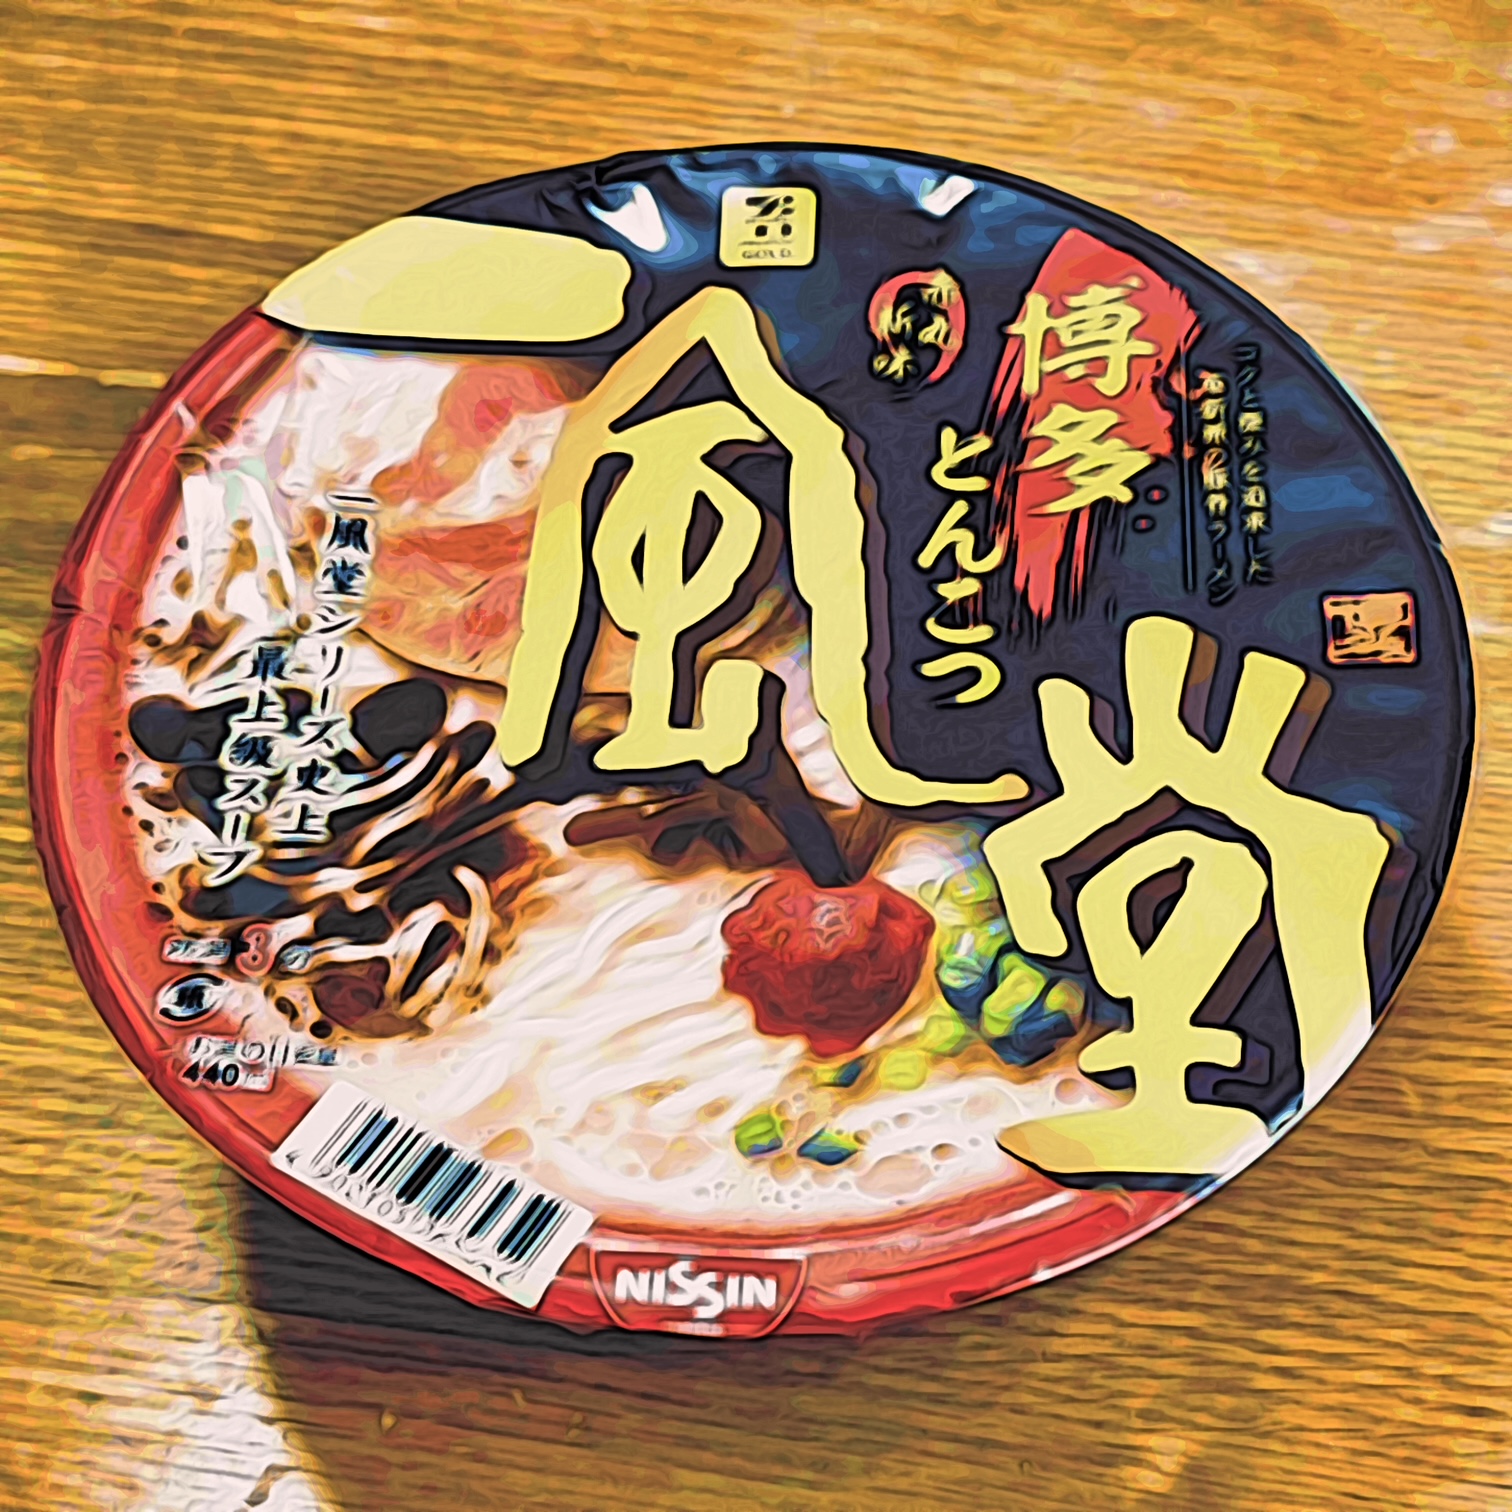 Tanoshi Nouilles ramen saveur soja caramel Reviews